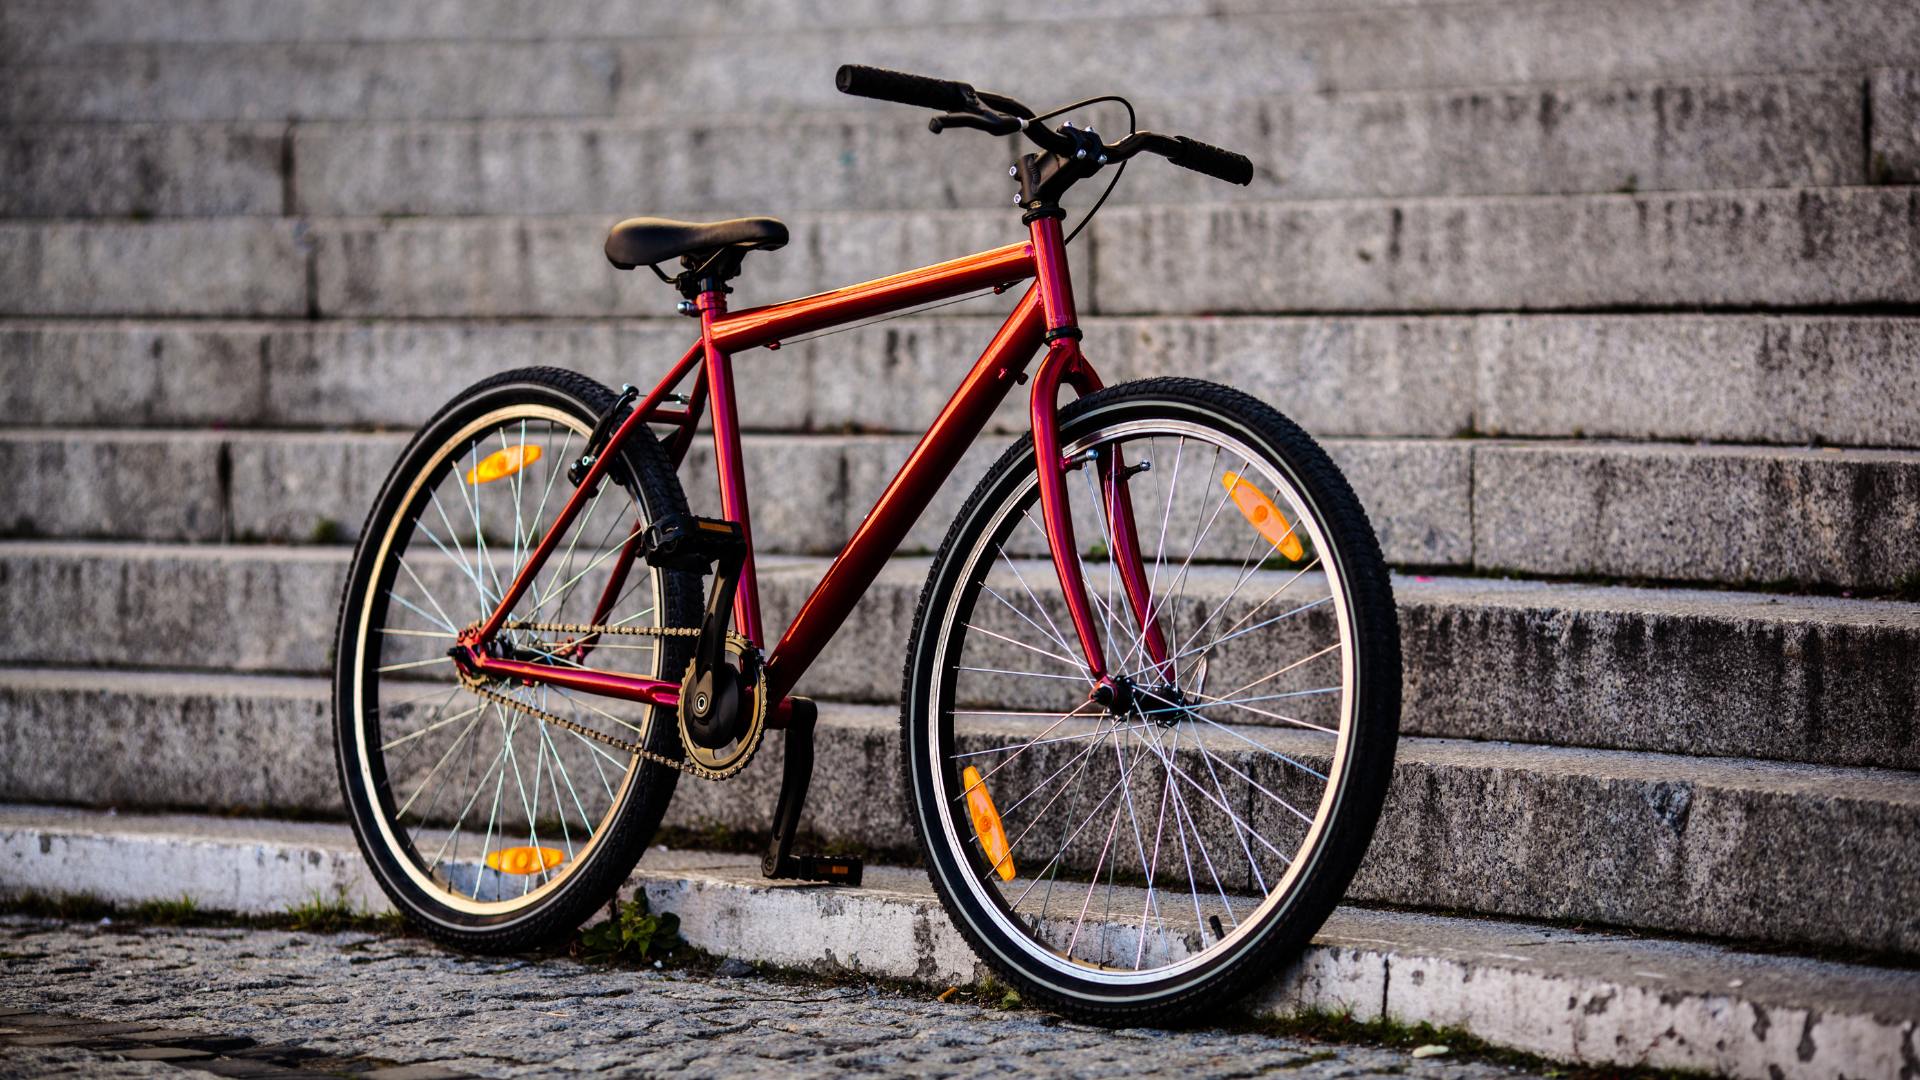 Sonhar com Bicicleta Vermelha: Qual é o Significado?